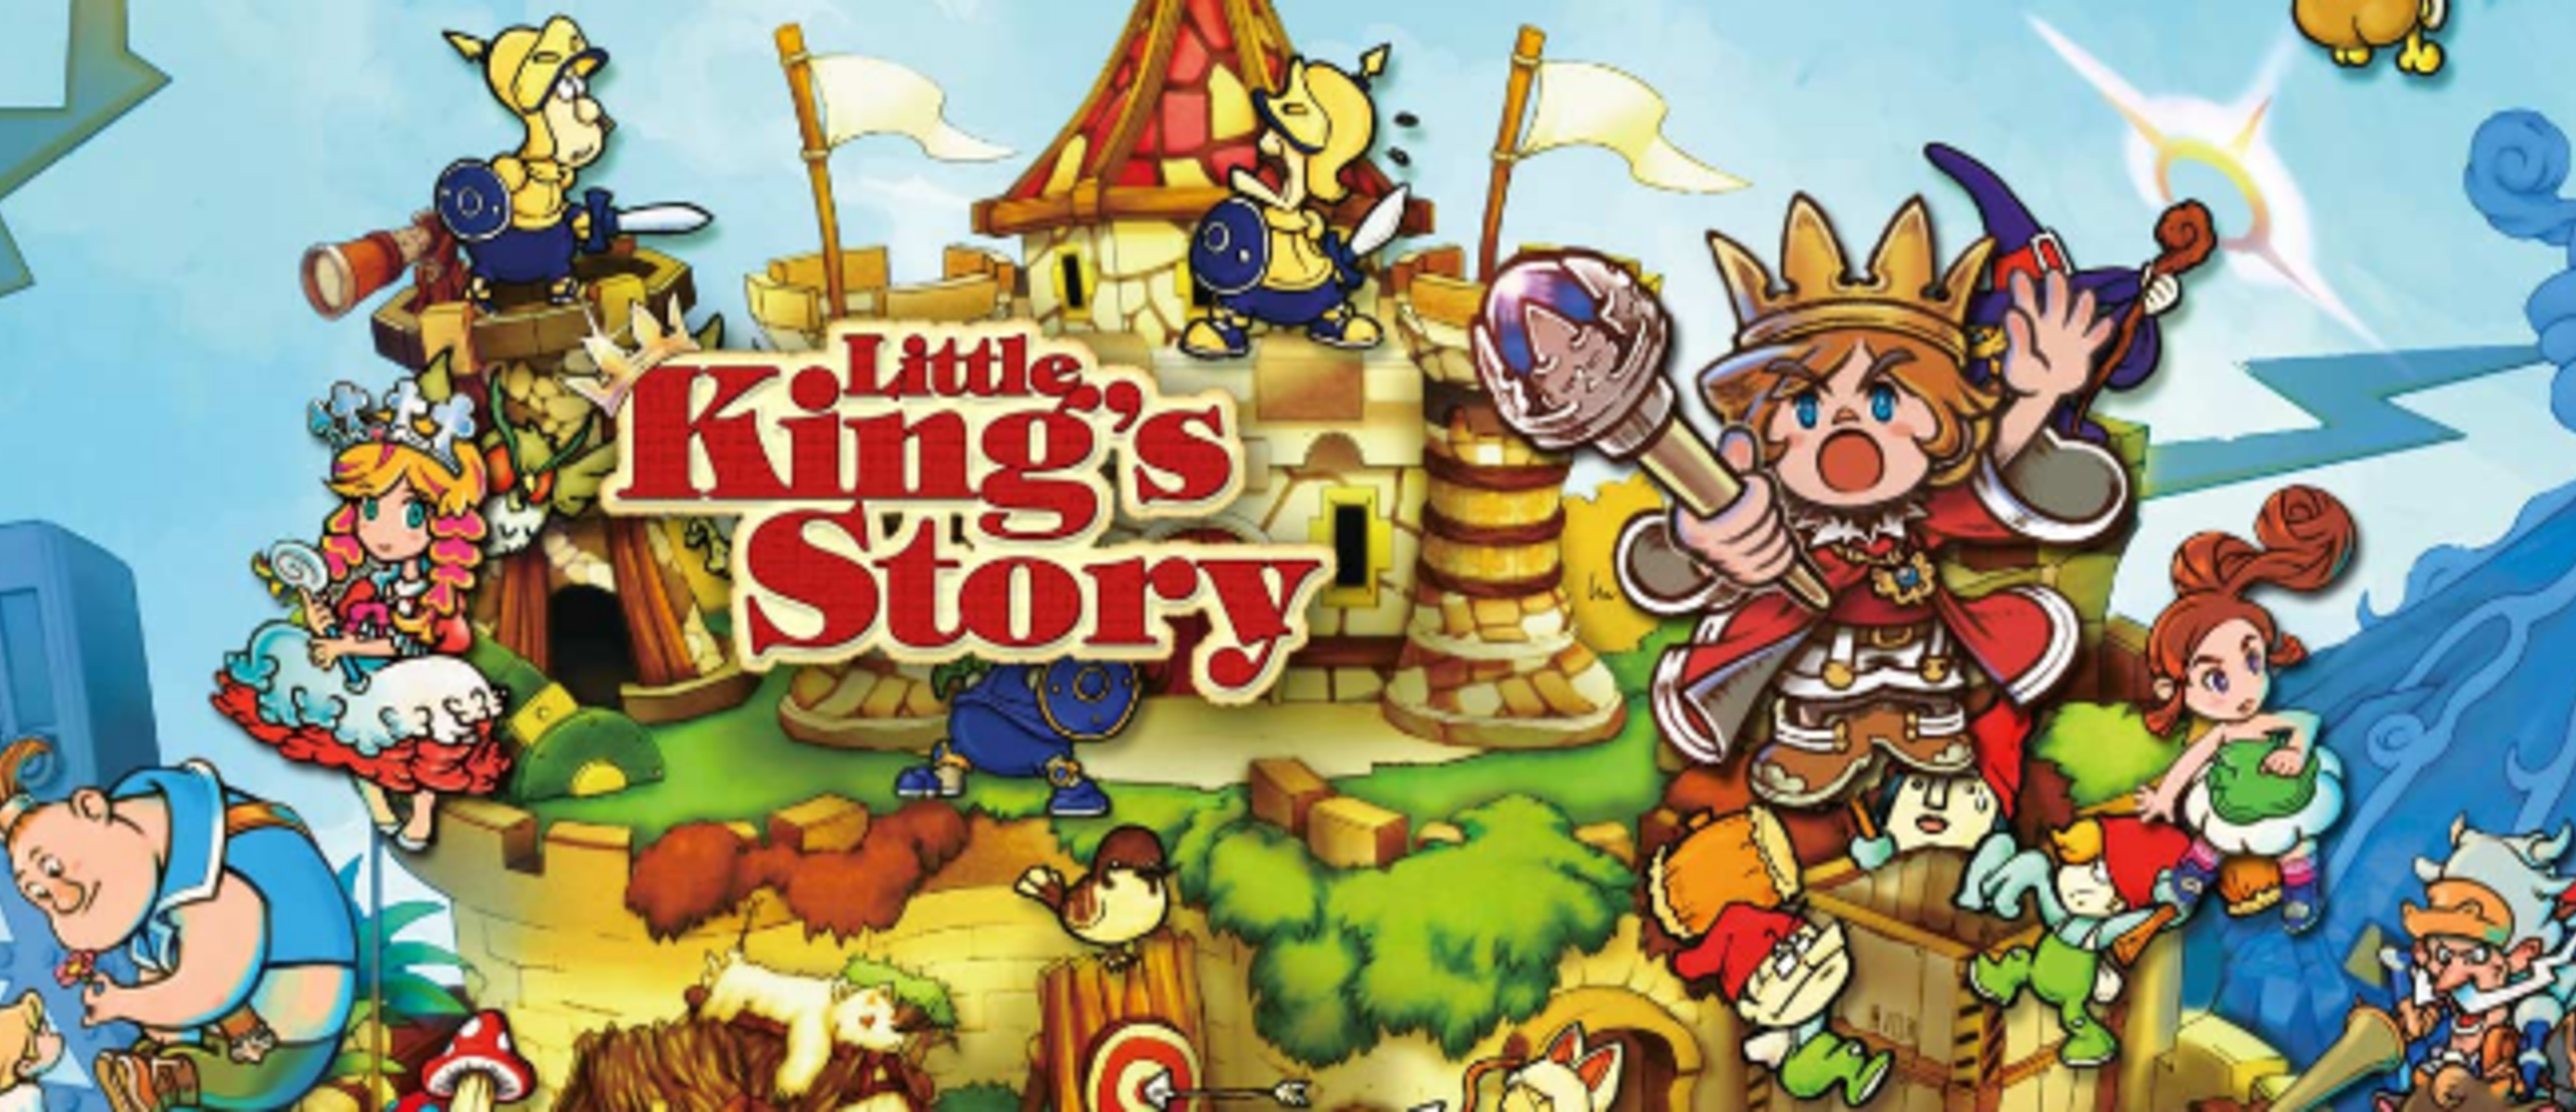 Игры песни маленькие игры маленькие. King story. Little King's story. Little King's story Wii. Little King game.